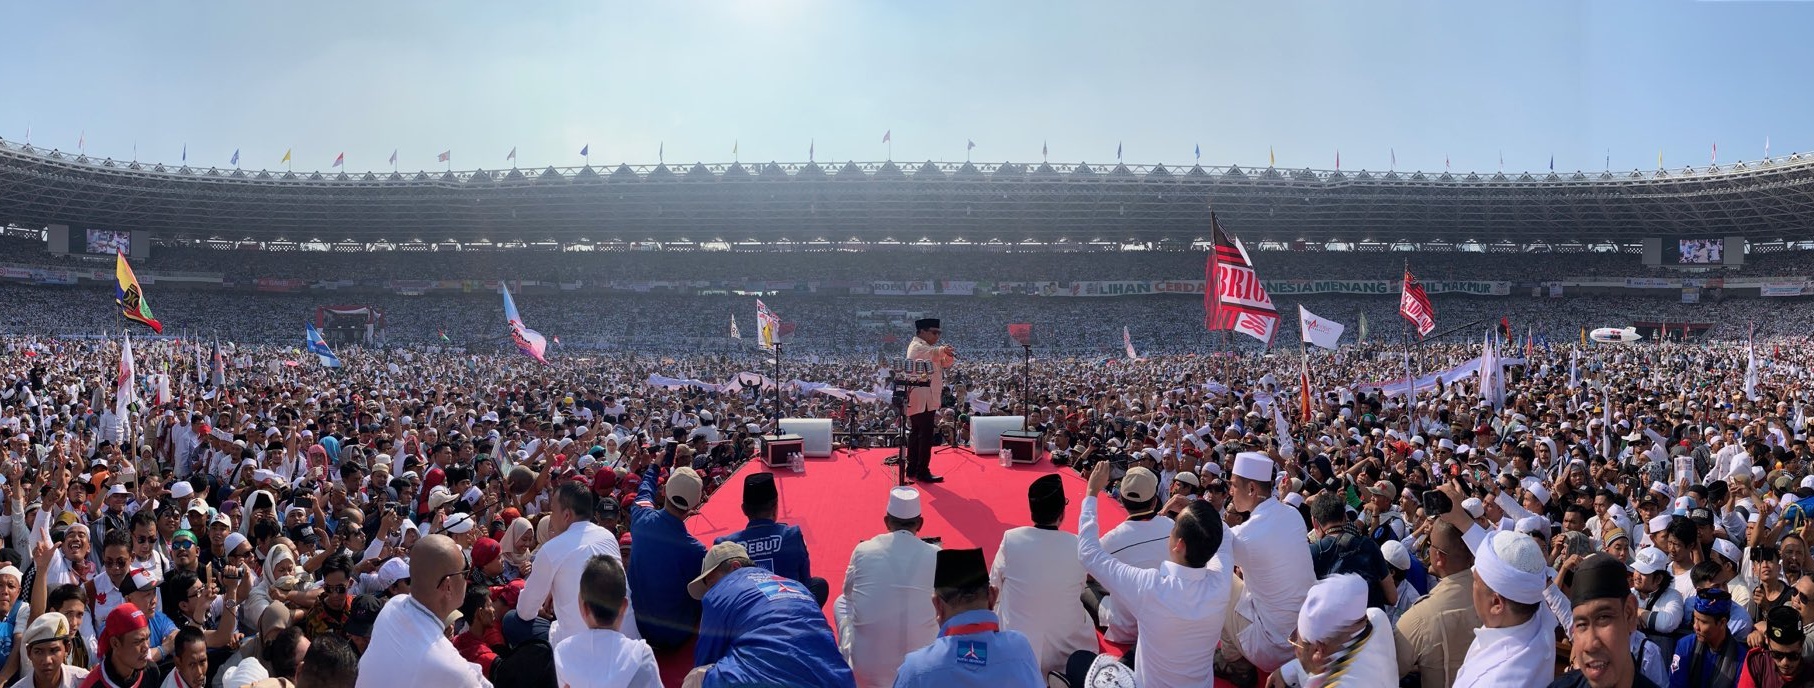 GBK Dipadati Lebih 1 Juta Orang, Prabowo: Rakyat Sudah Tidak Sabar Ingin Perubahan